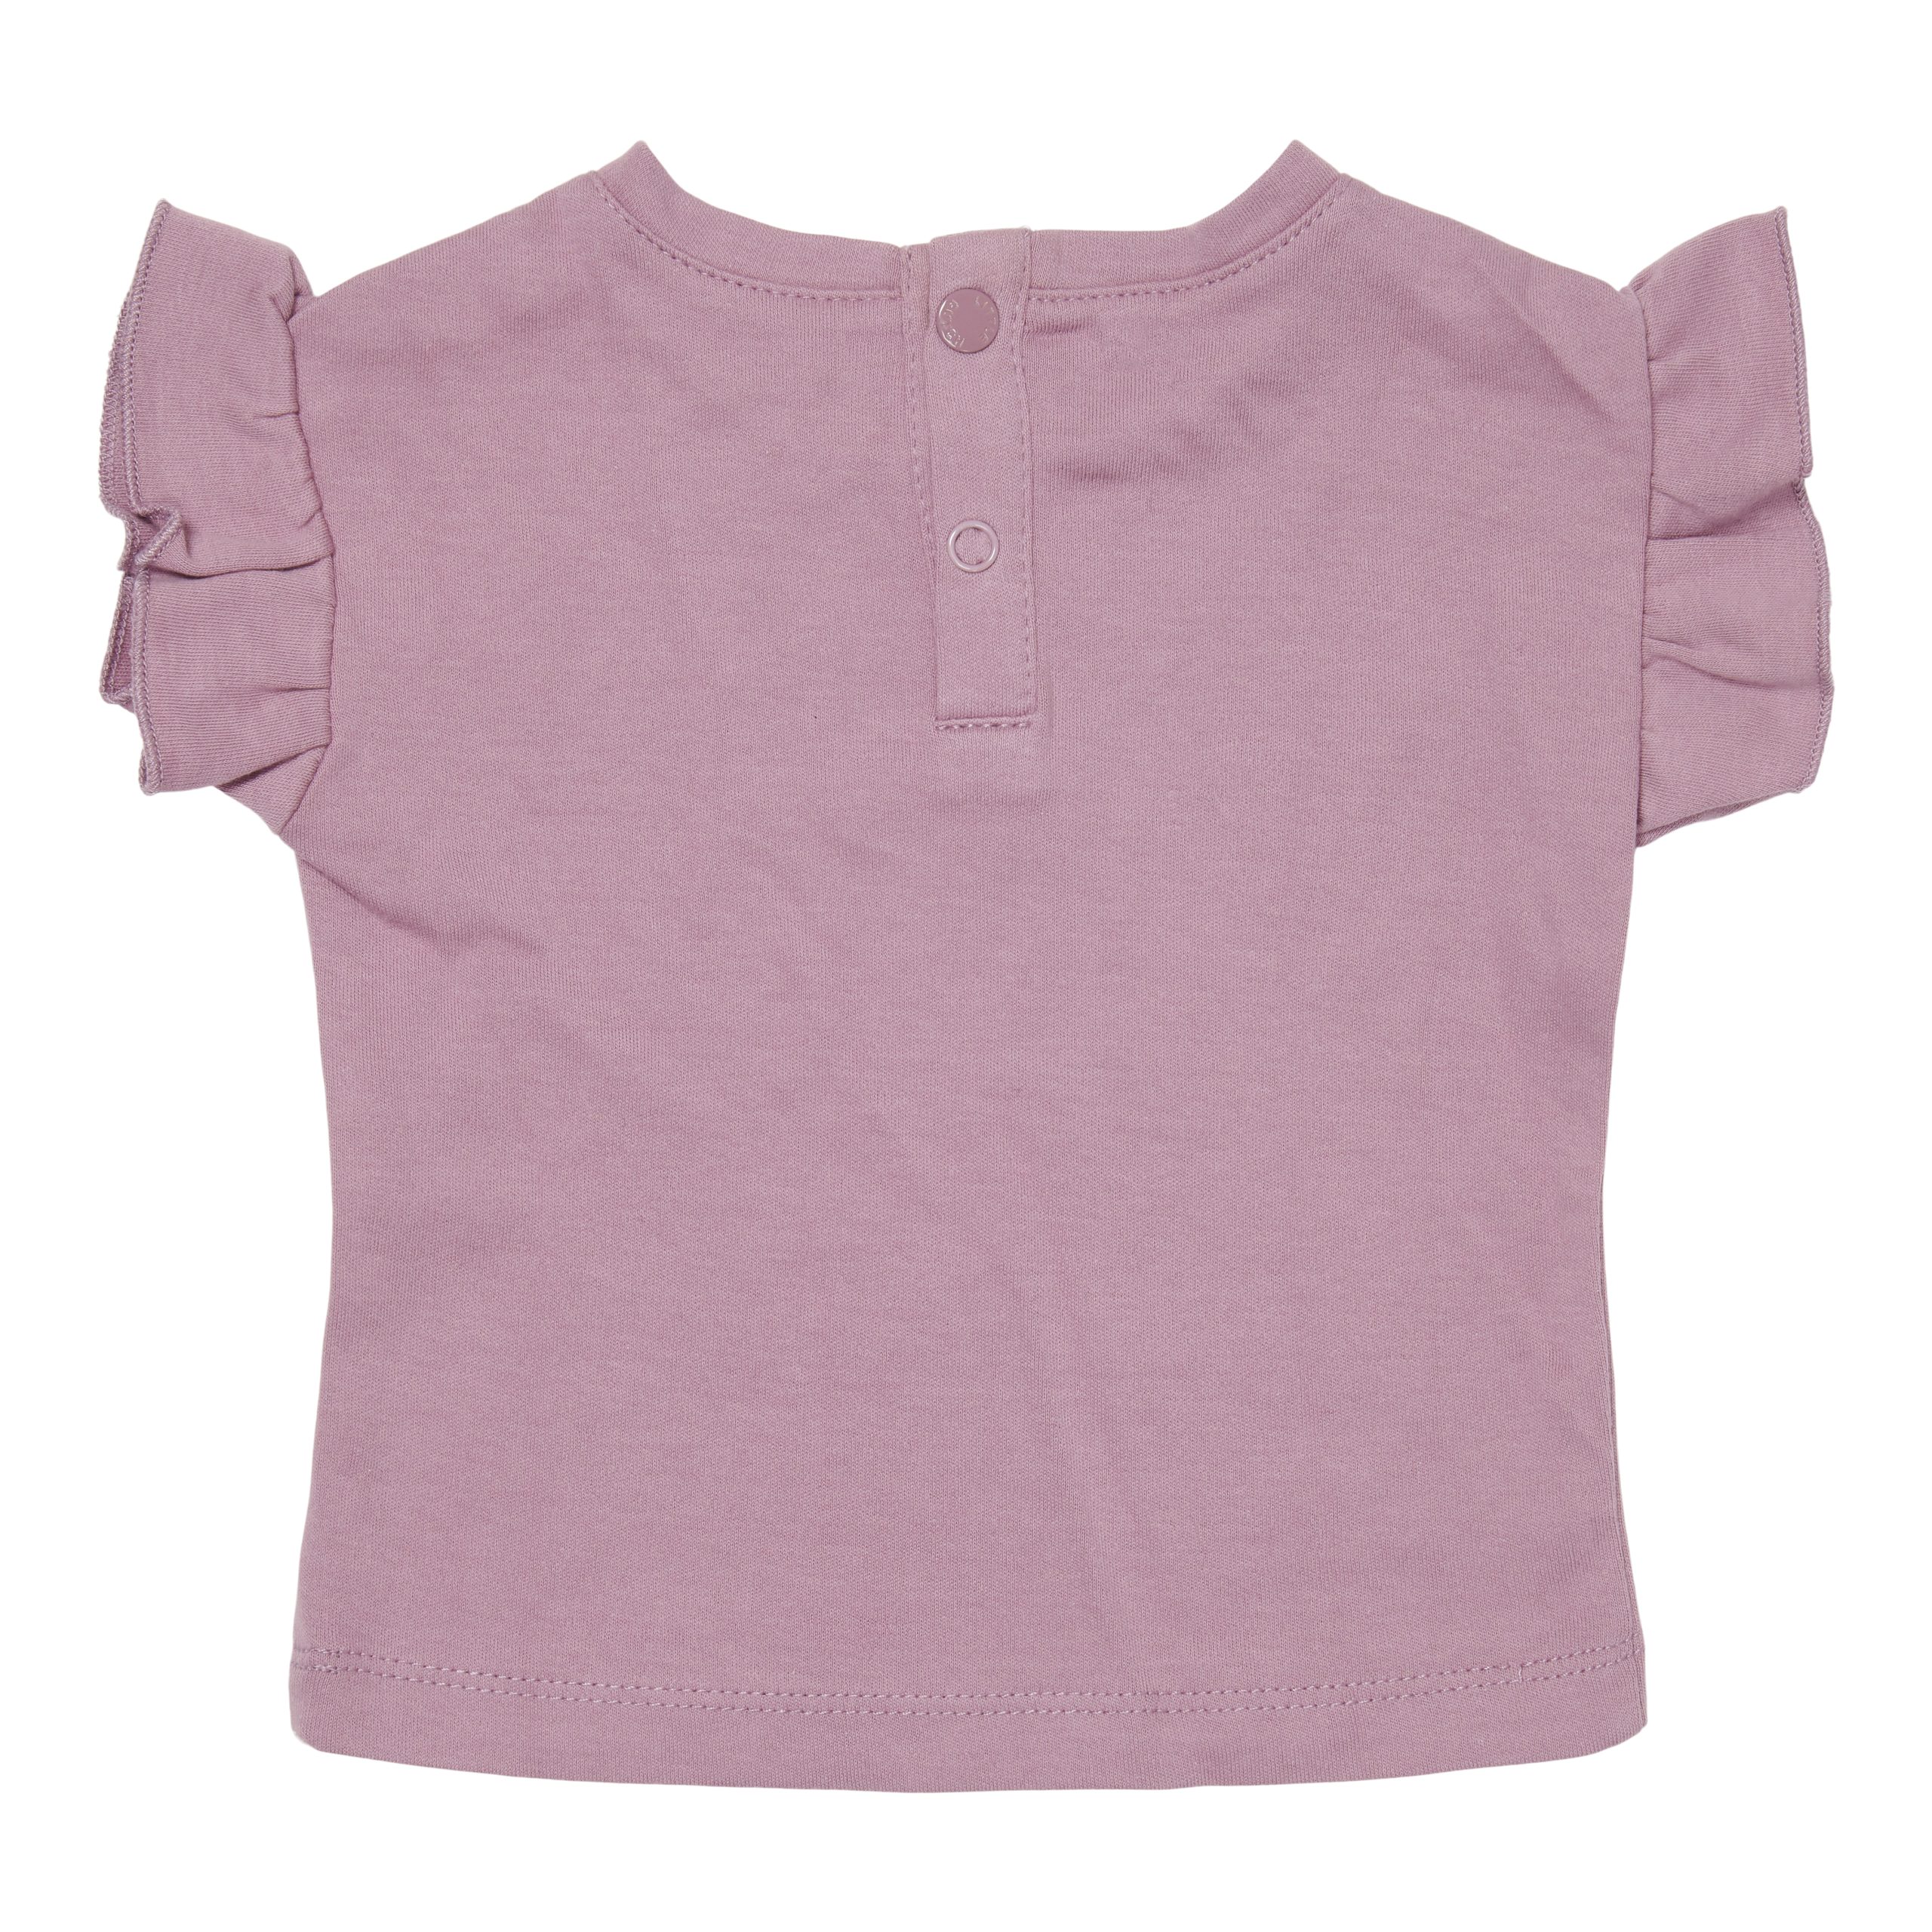 CL12973101 – T-shirt Short Sleeve Mauve – Vintage Little Flowers – (2)